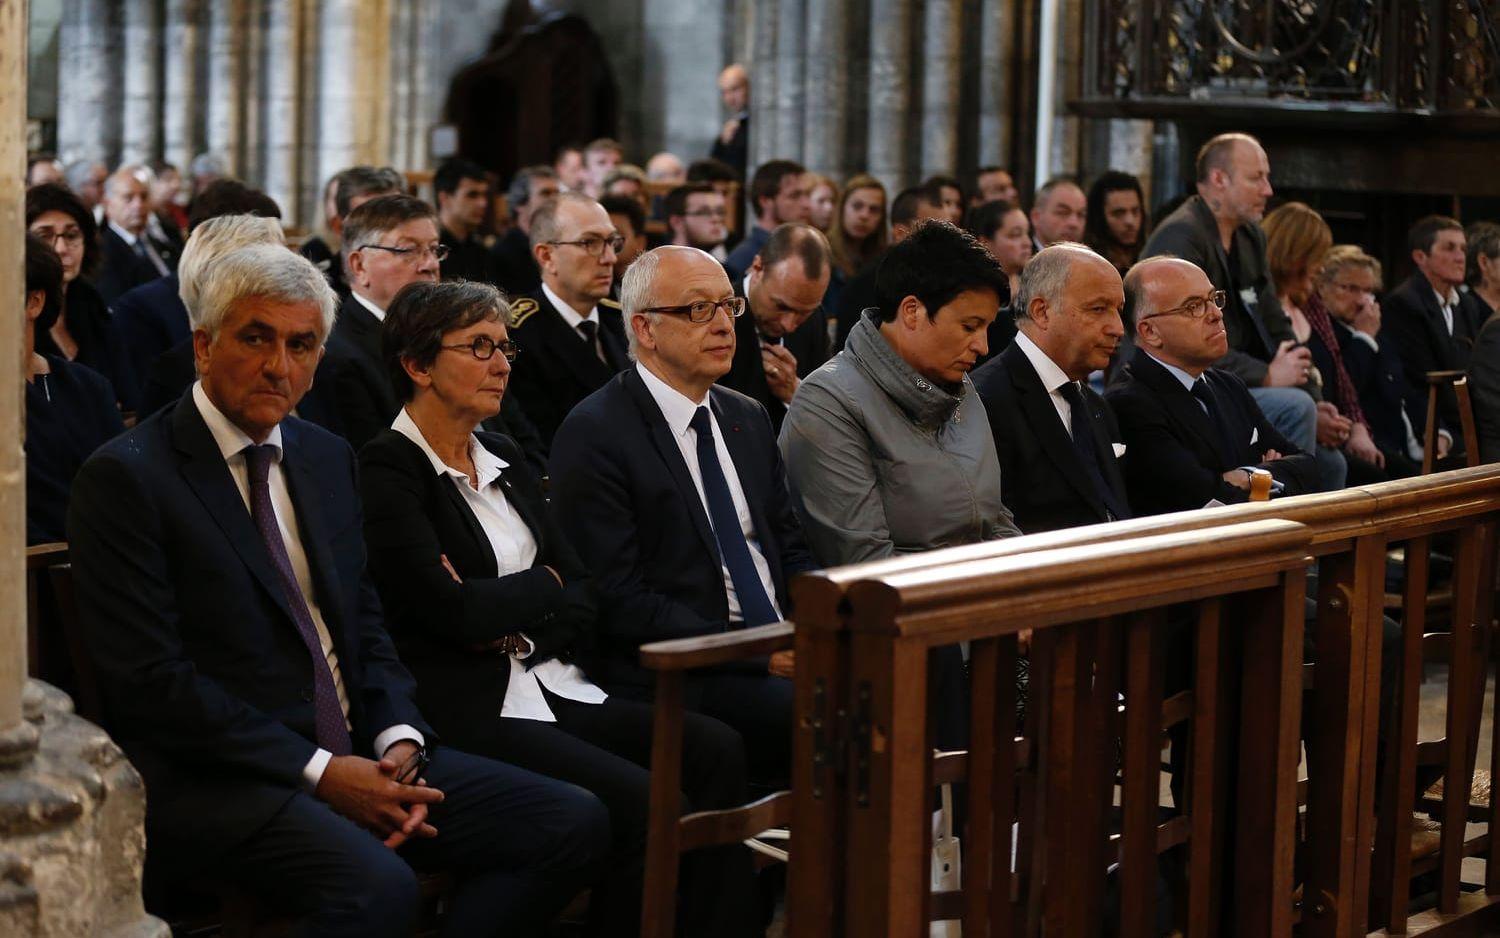 Franska politiker och representanter för katolska kyrkan fyllde de främsta bänkraderna i kyrkan. Bild: TT